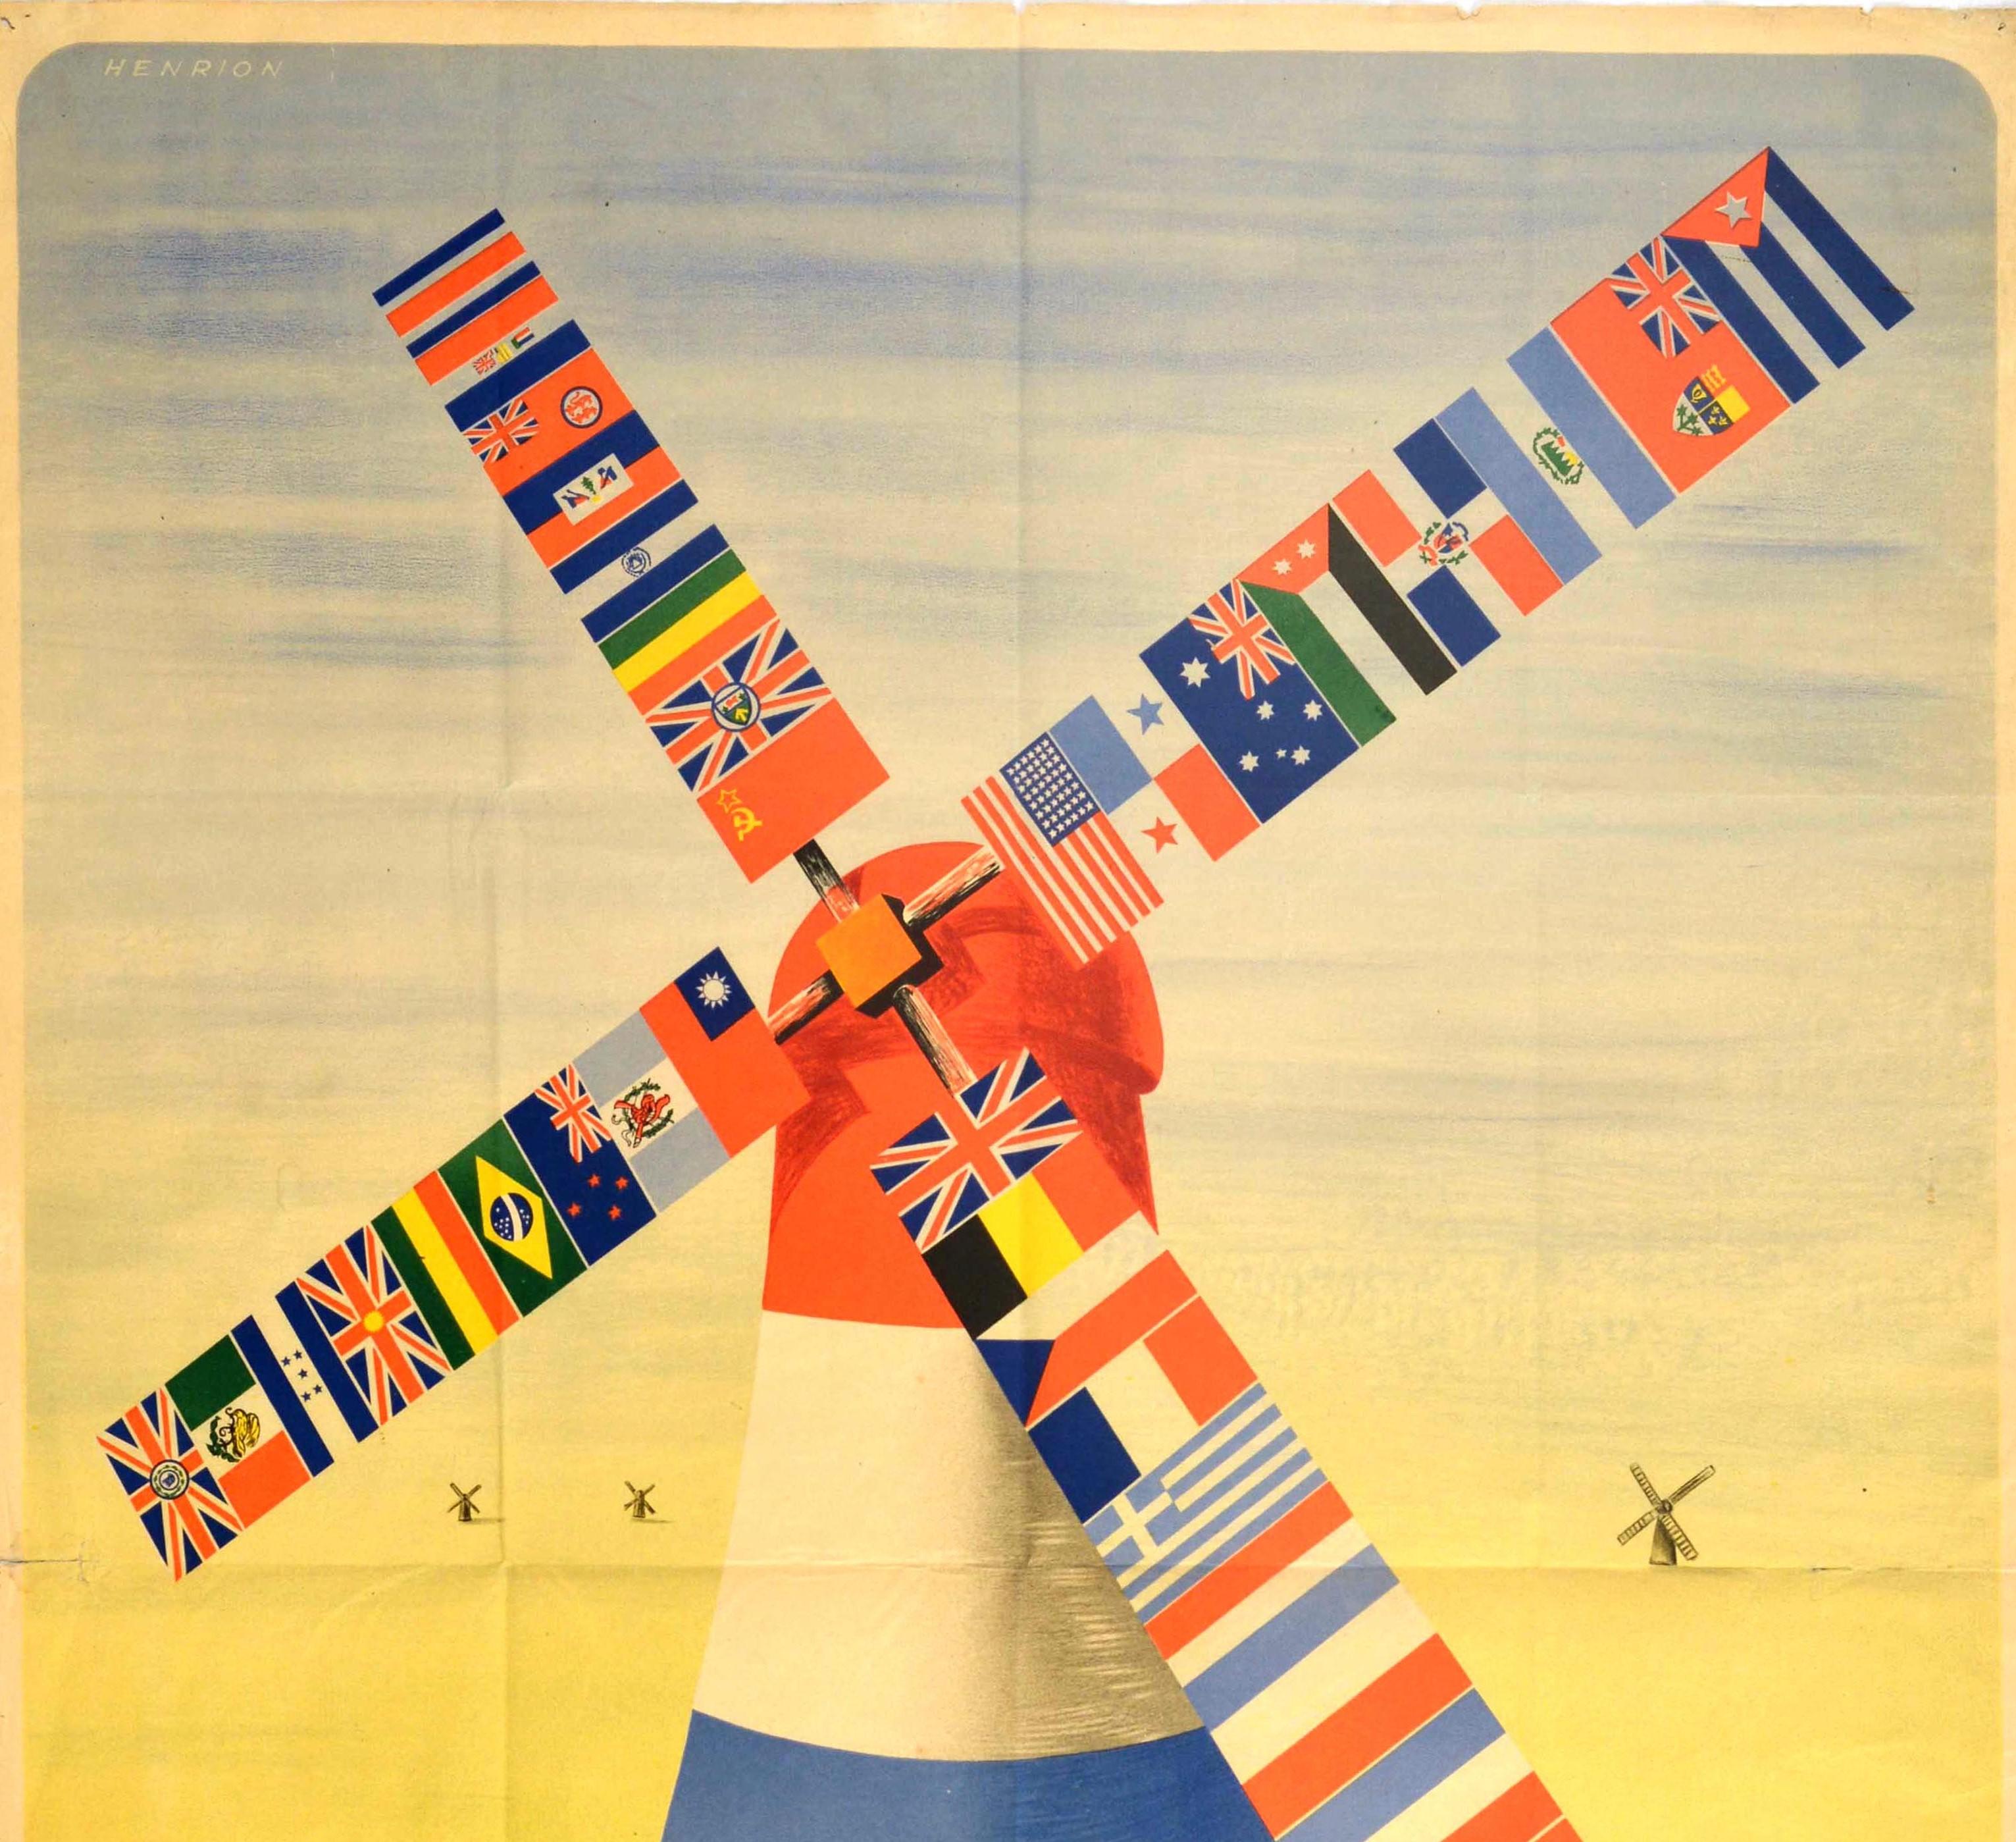 Originales Propagandaplakat für die Befreiung des Zweiten Weltkriegs - Die Soldaten der niederländischen Untergrundkräfte grüßen die Soldaten der Vereinten Nationen / De Binnenlandsche Strijdkrachten groeten de Soldaten der Bondgenooten - mit einem